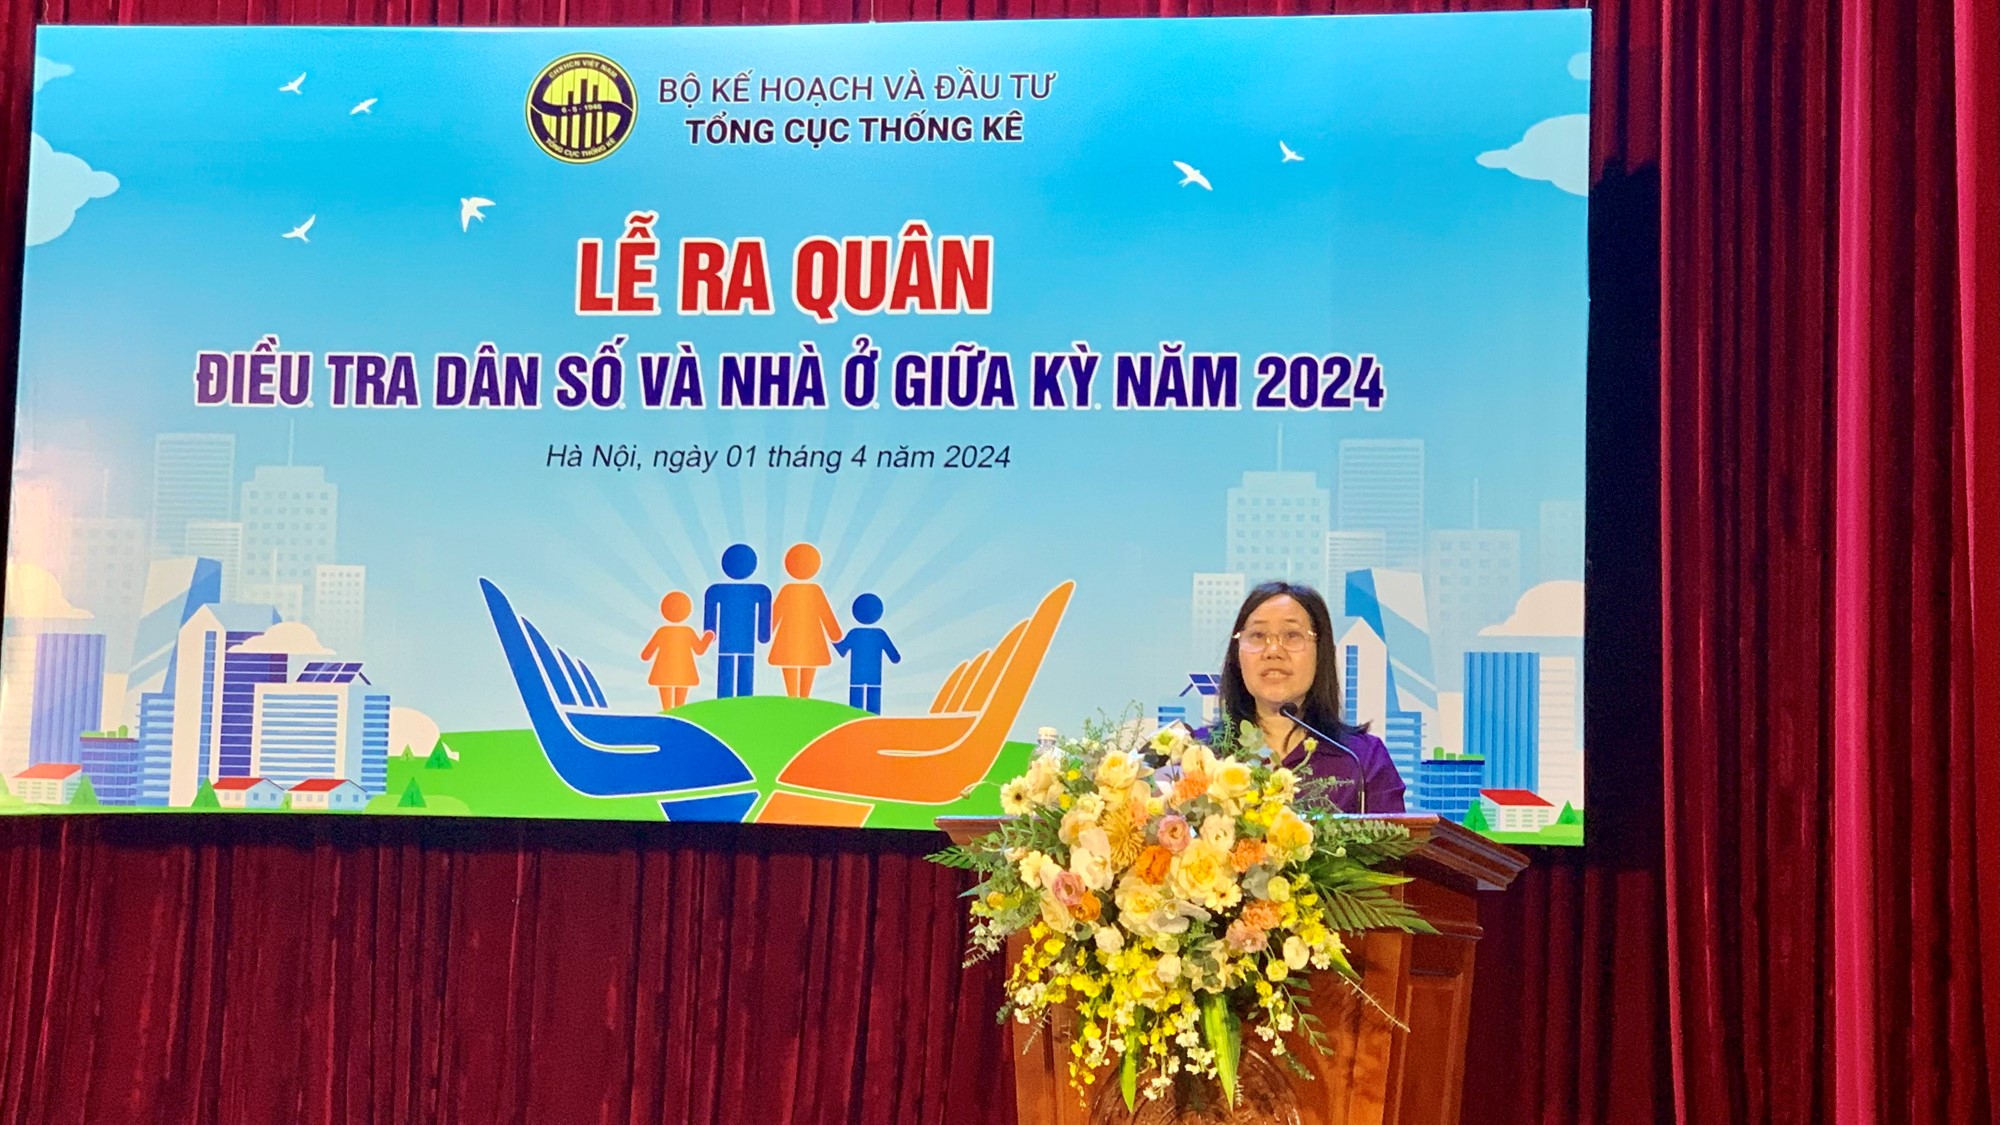 Điều tra dân số và nhà ở năm 2024: Lần đầu thu thập thông tin người nước ngoài ở Việt Nam  - ảnh 2